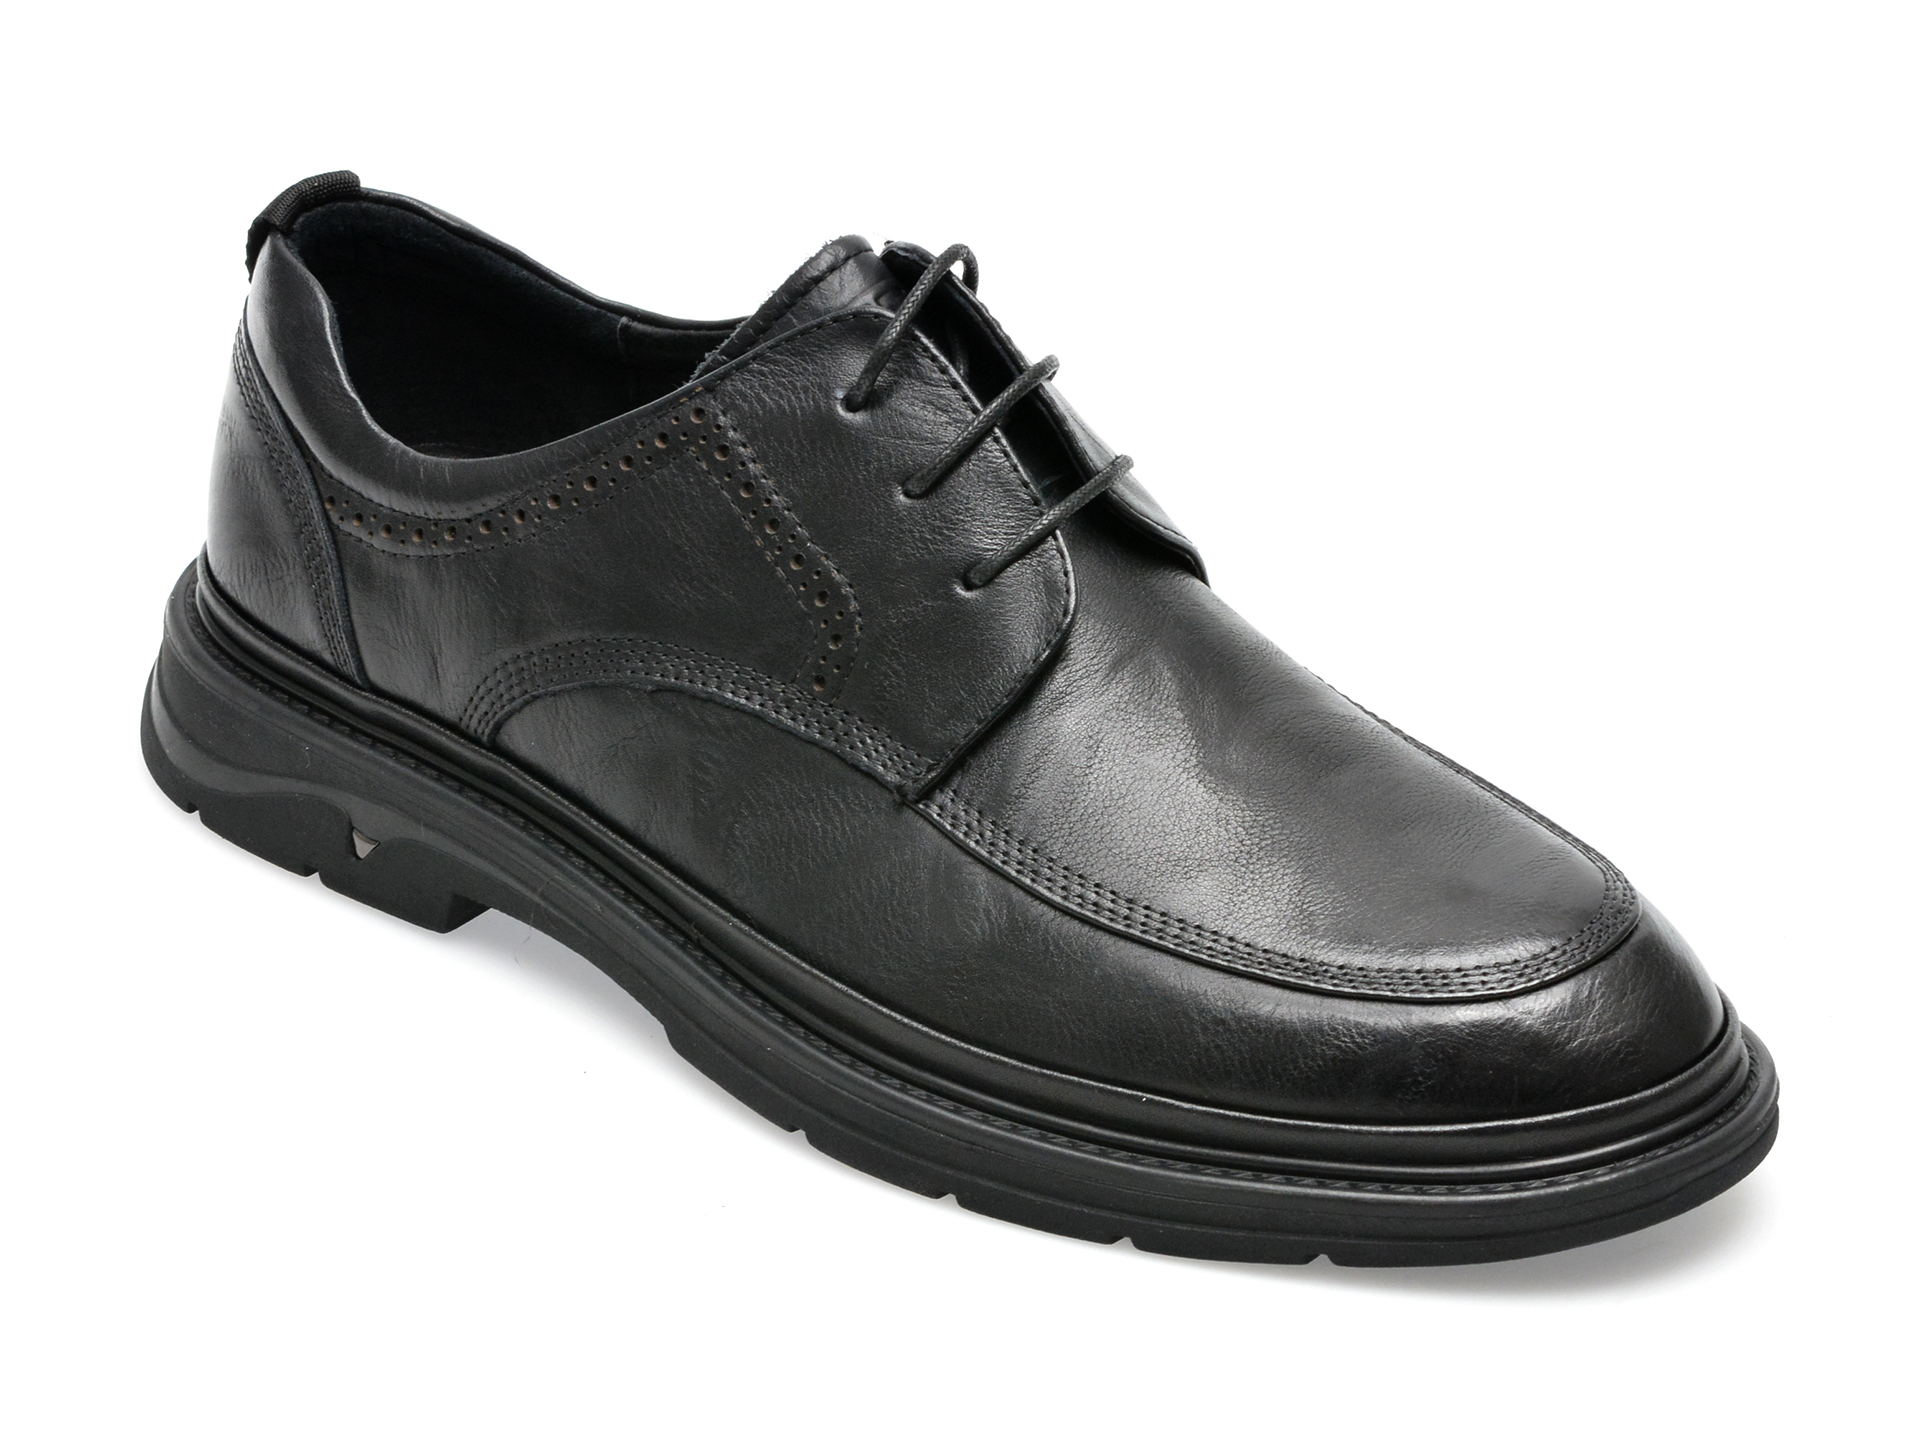 Pantofi OTTER negri, E620005, din piele naturala barbati 2023-09-21